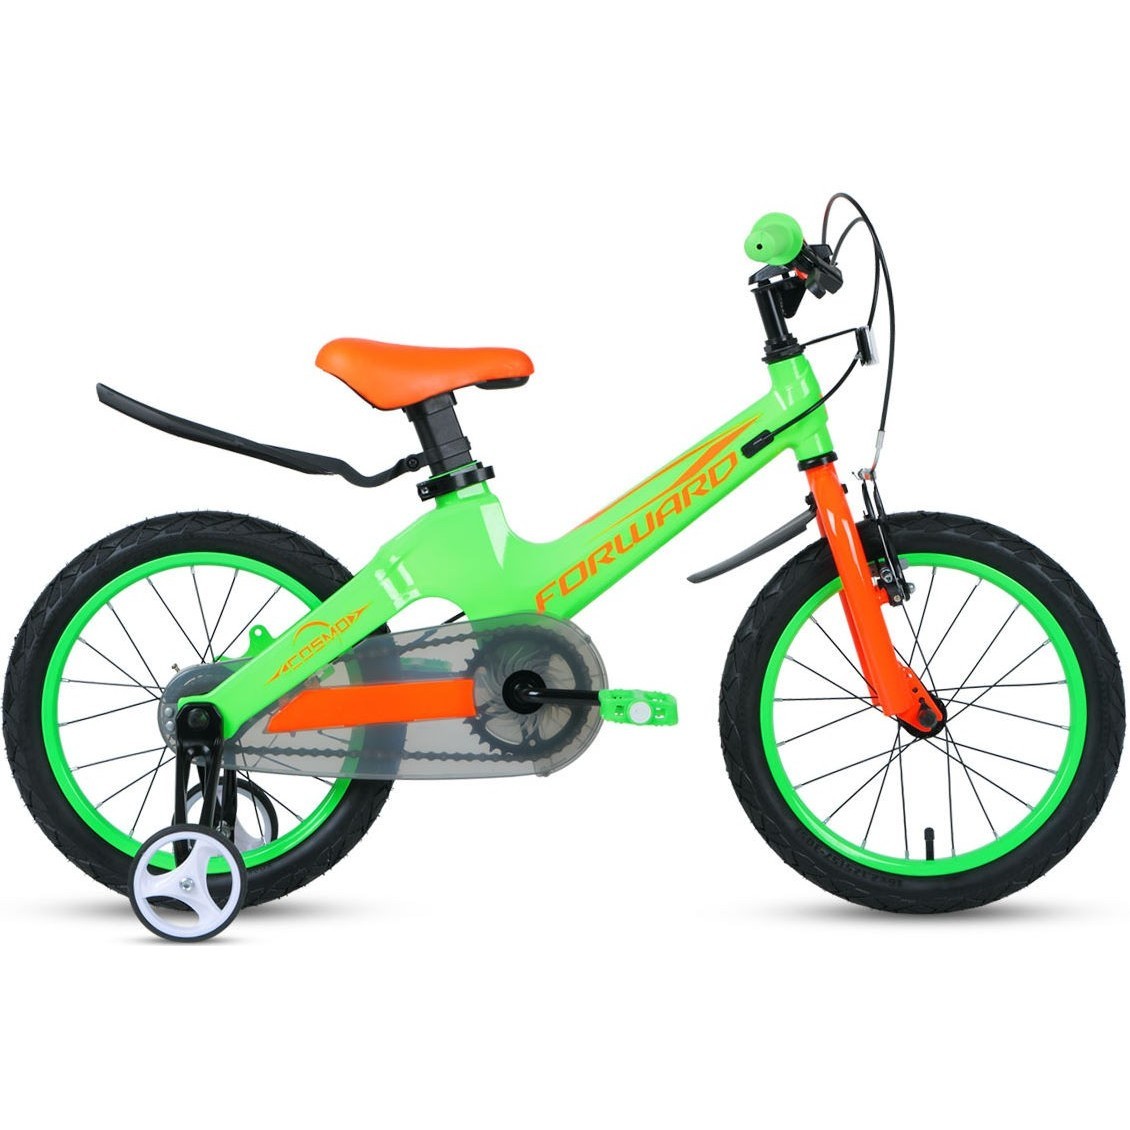 Детский велосипед Forward Cosmo 16 2.0 2020 (красный)